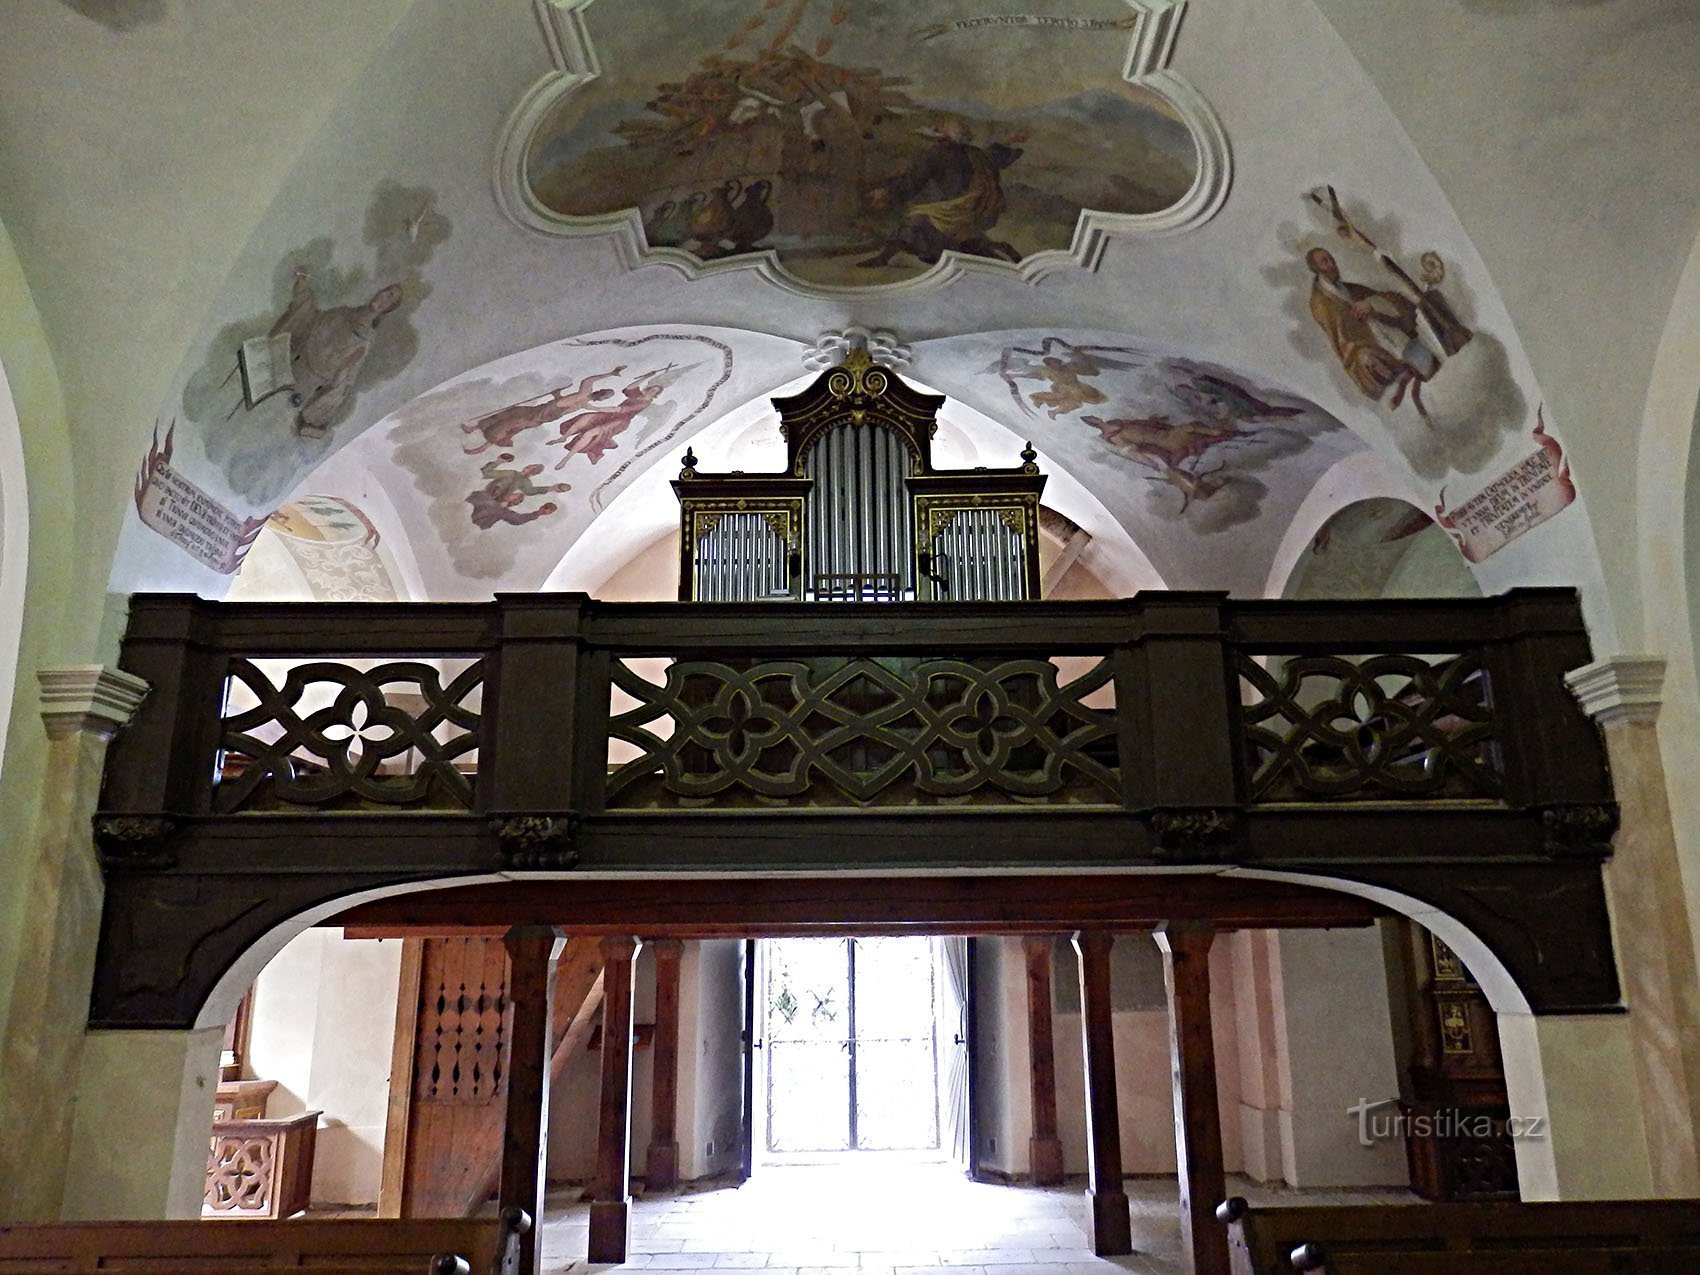 interieur van de kerk van de Heilige Drie-eenheid